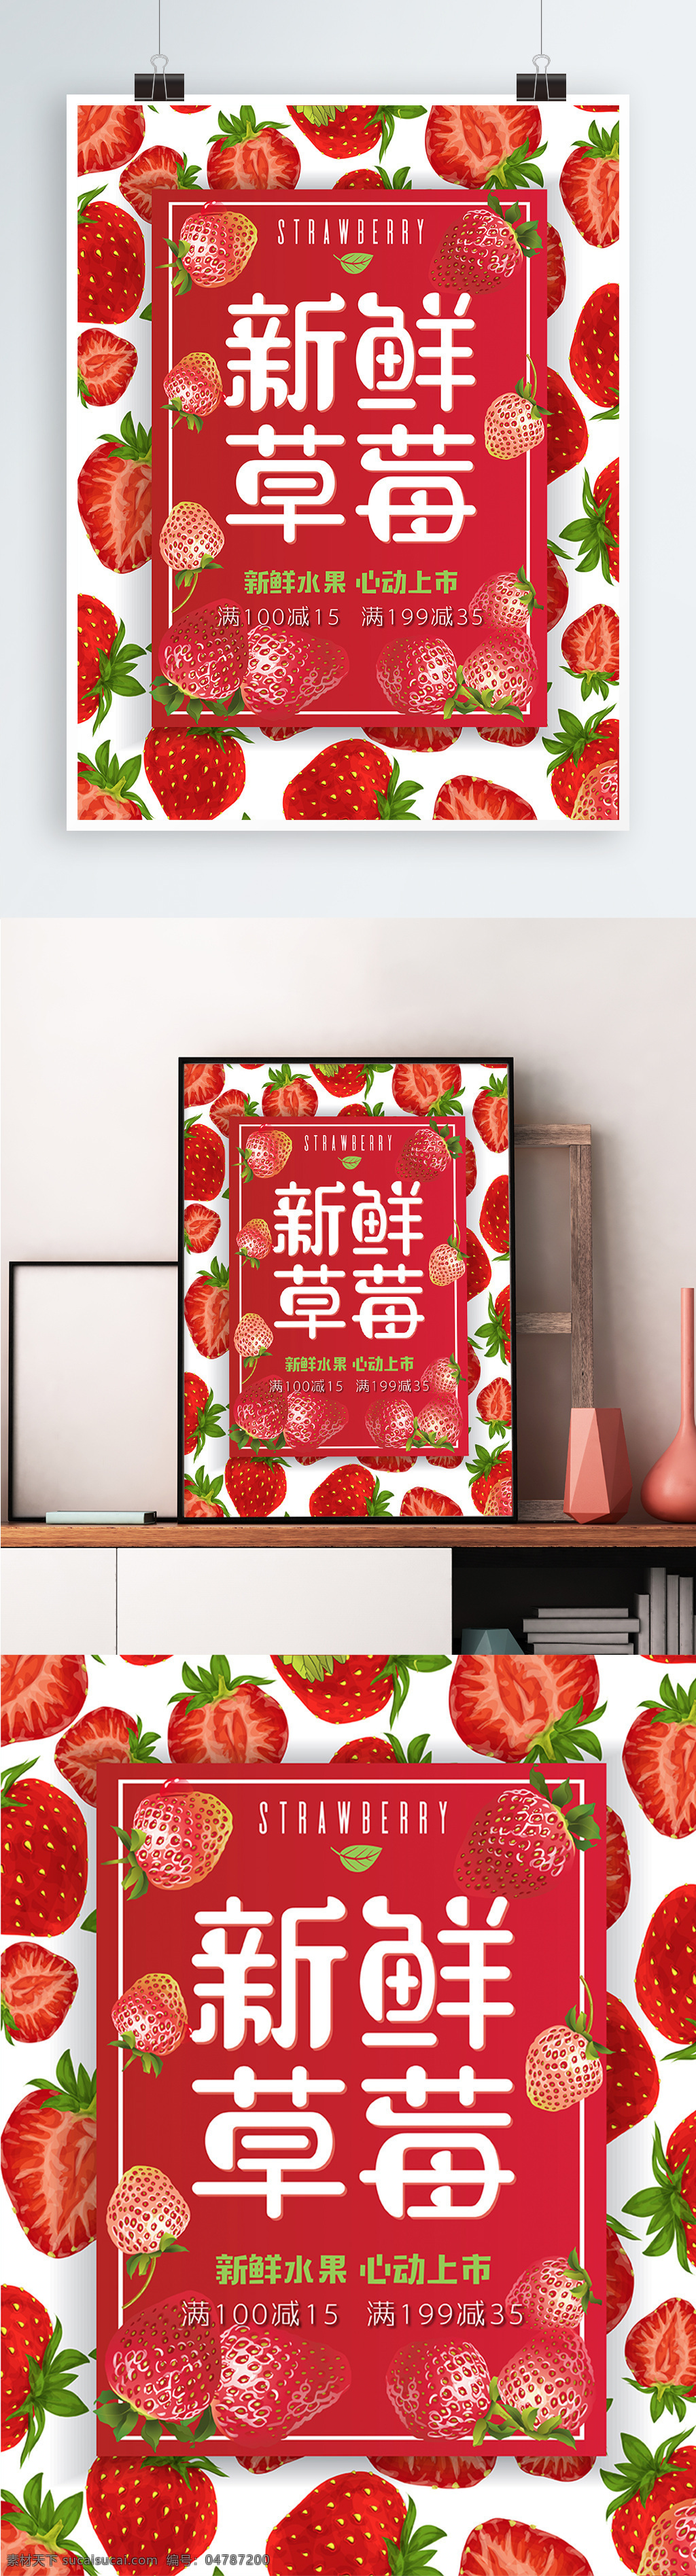 新鲜 草莓 美食 海报 矢量 模板 草莓海报 促销 促销海报 美食海报 食物 水果 水果店 水果店促销 水果店海报 水果海报